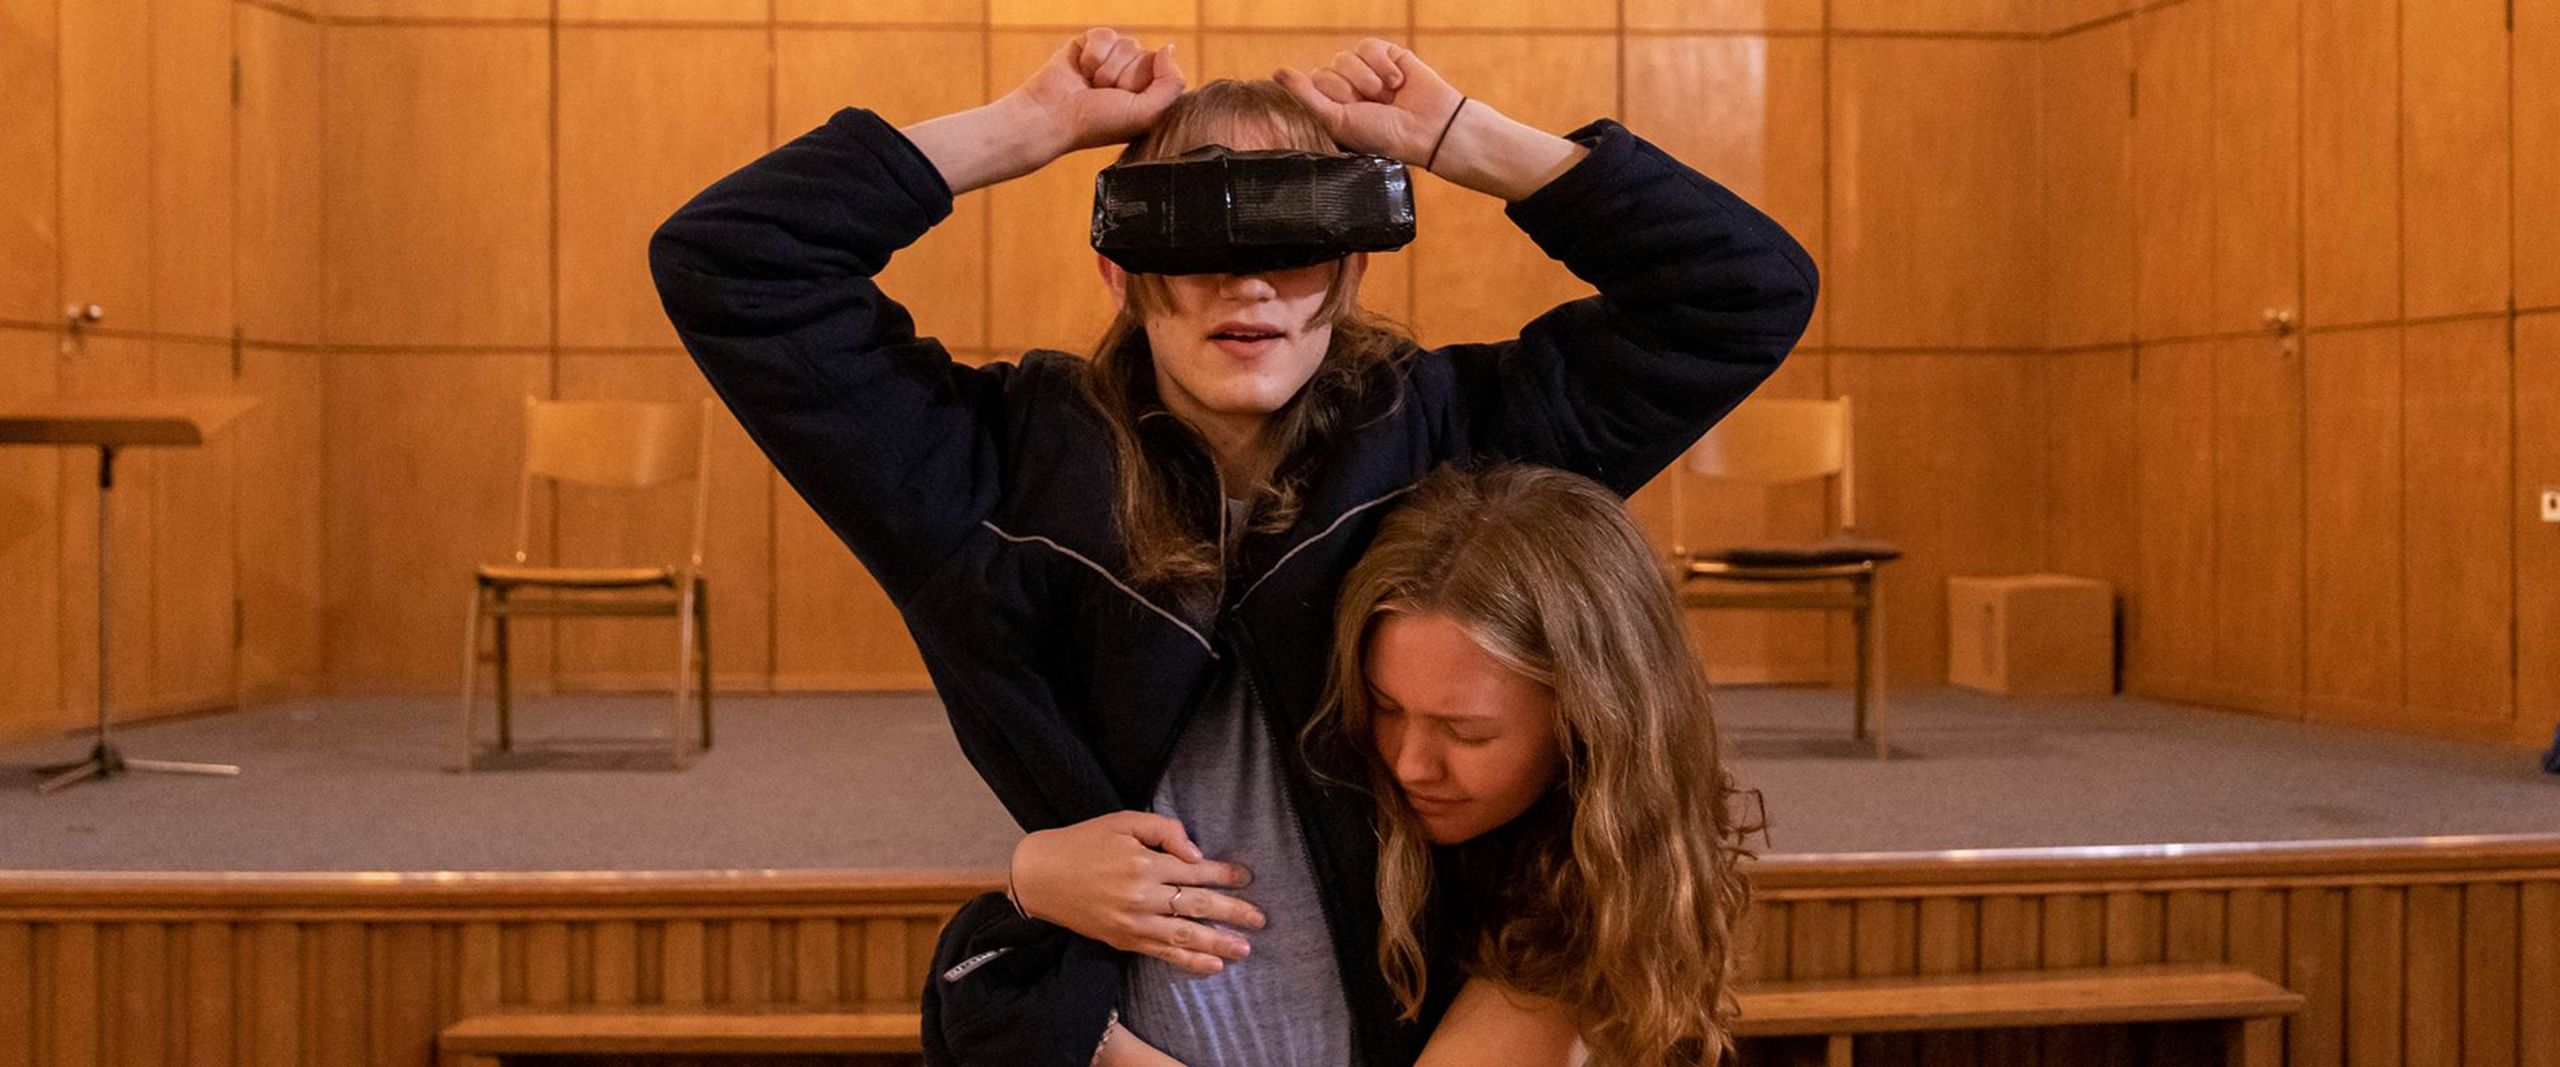 Eine junge Frau umarmt eine andere Frau, die eine Virtual-Reality-Brill trägt, bei einer Probe der HSB-Theaterwerkstatt.